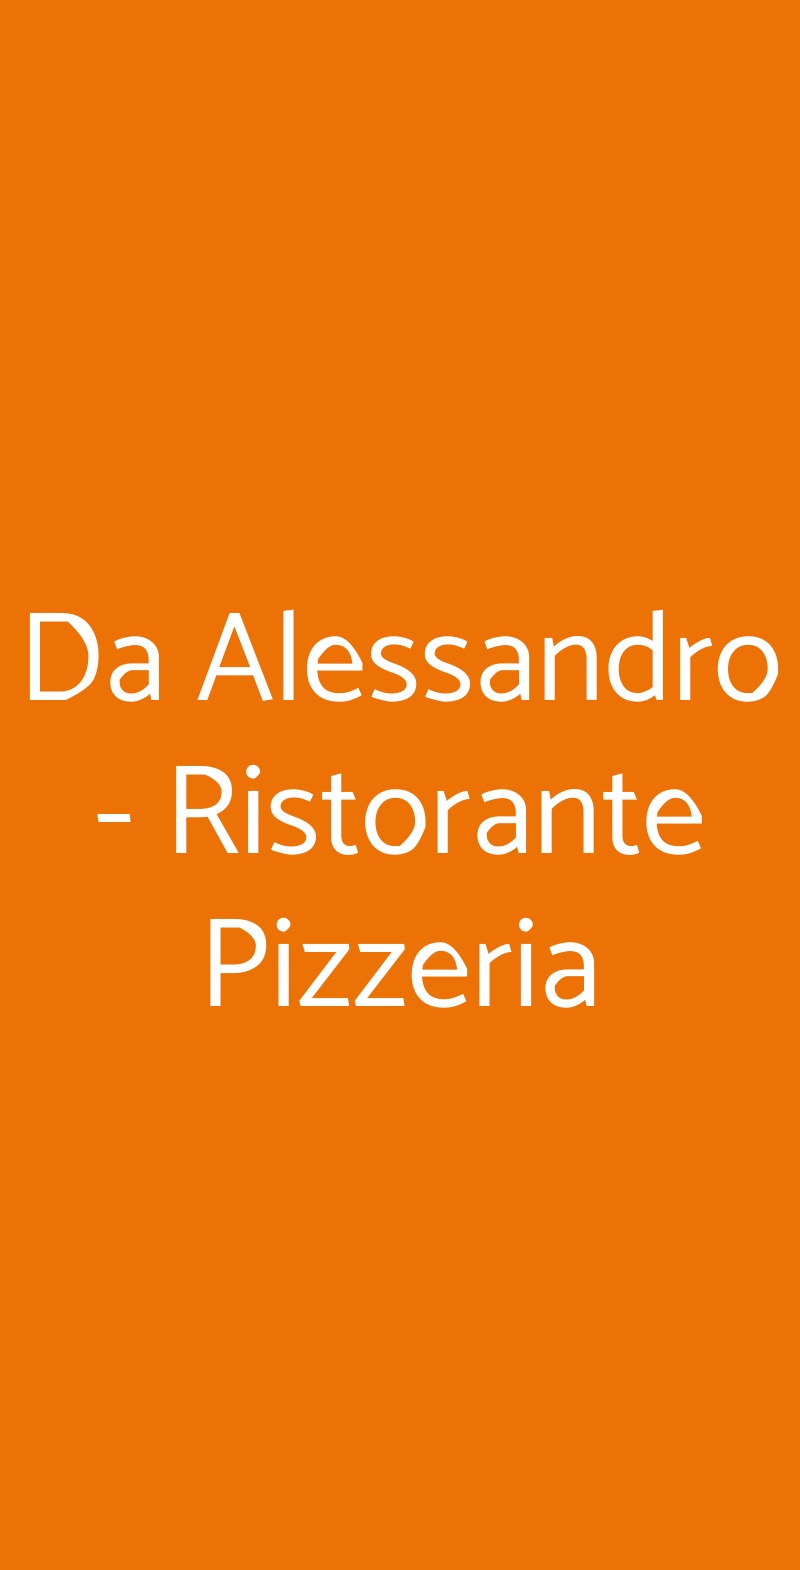 Da Alessandro - Ristorante Pizzeria Ladispoli menù 1 pagina